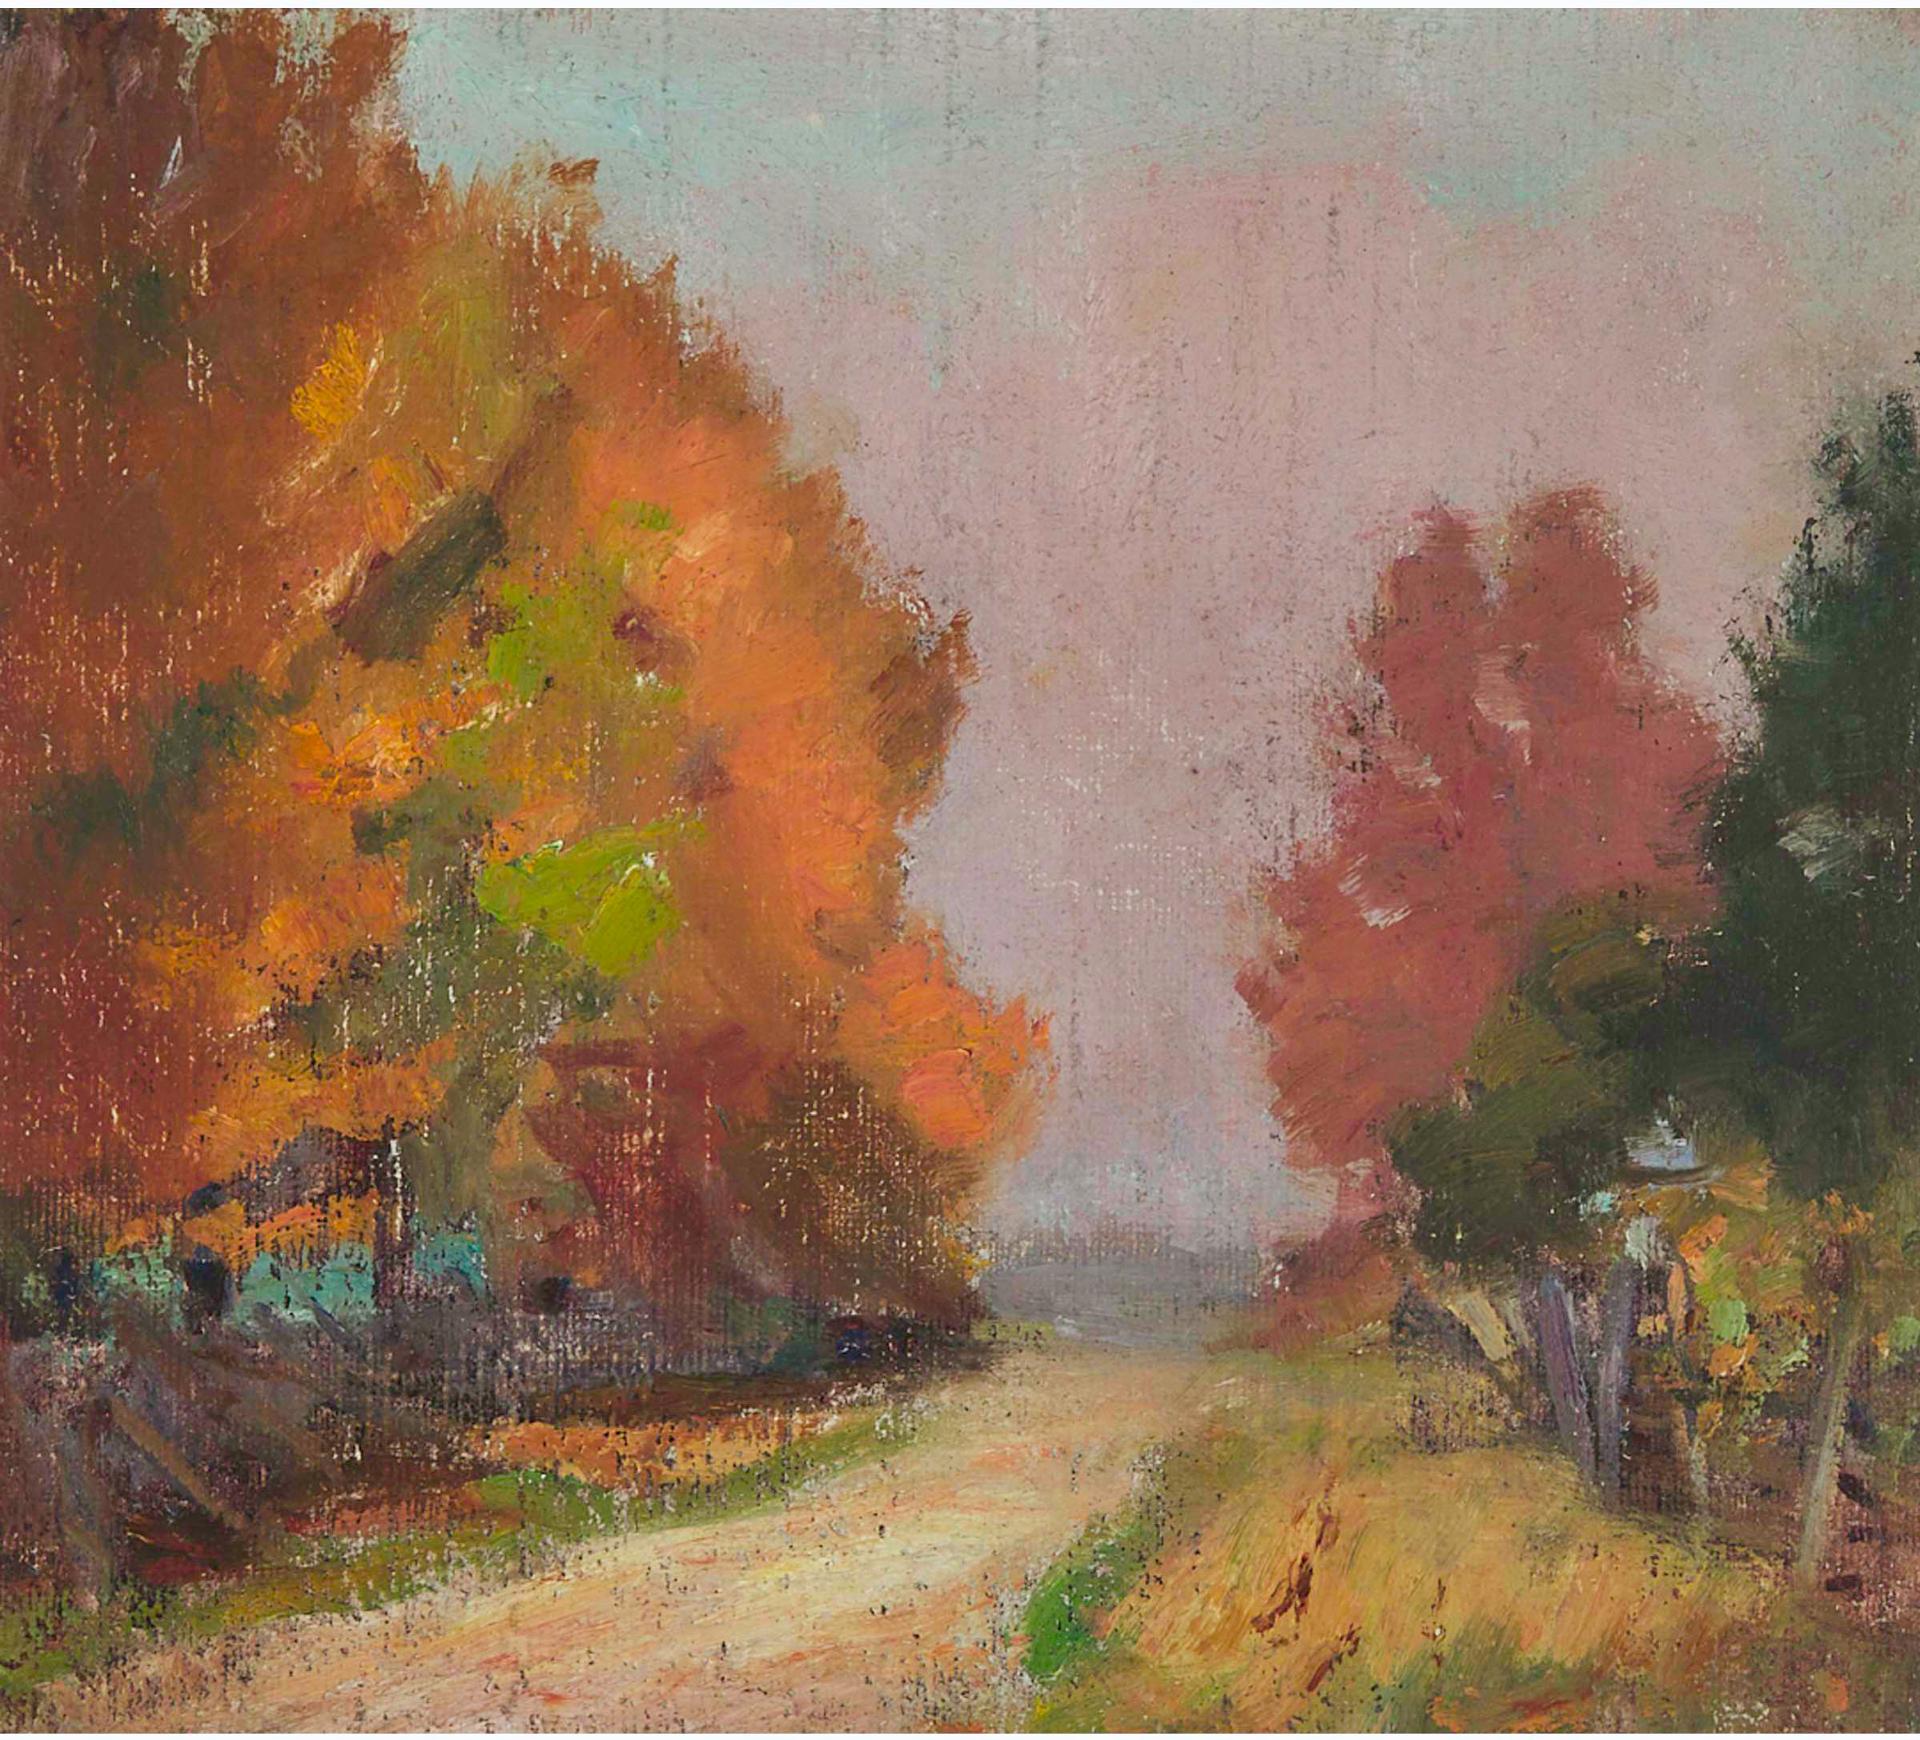 John William (J.W.) Beatty (1869-1941) - Country Lane, Autumn